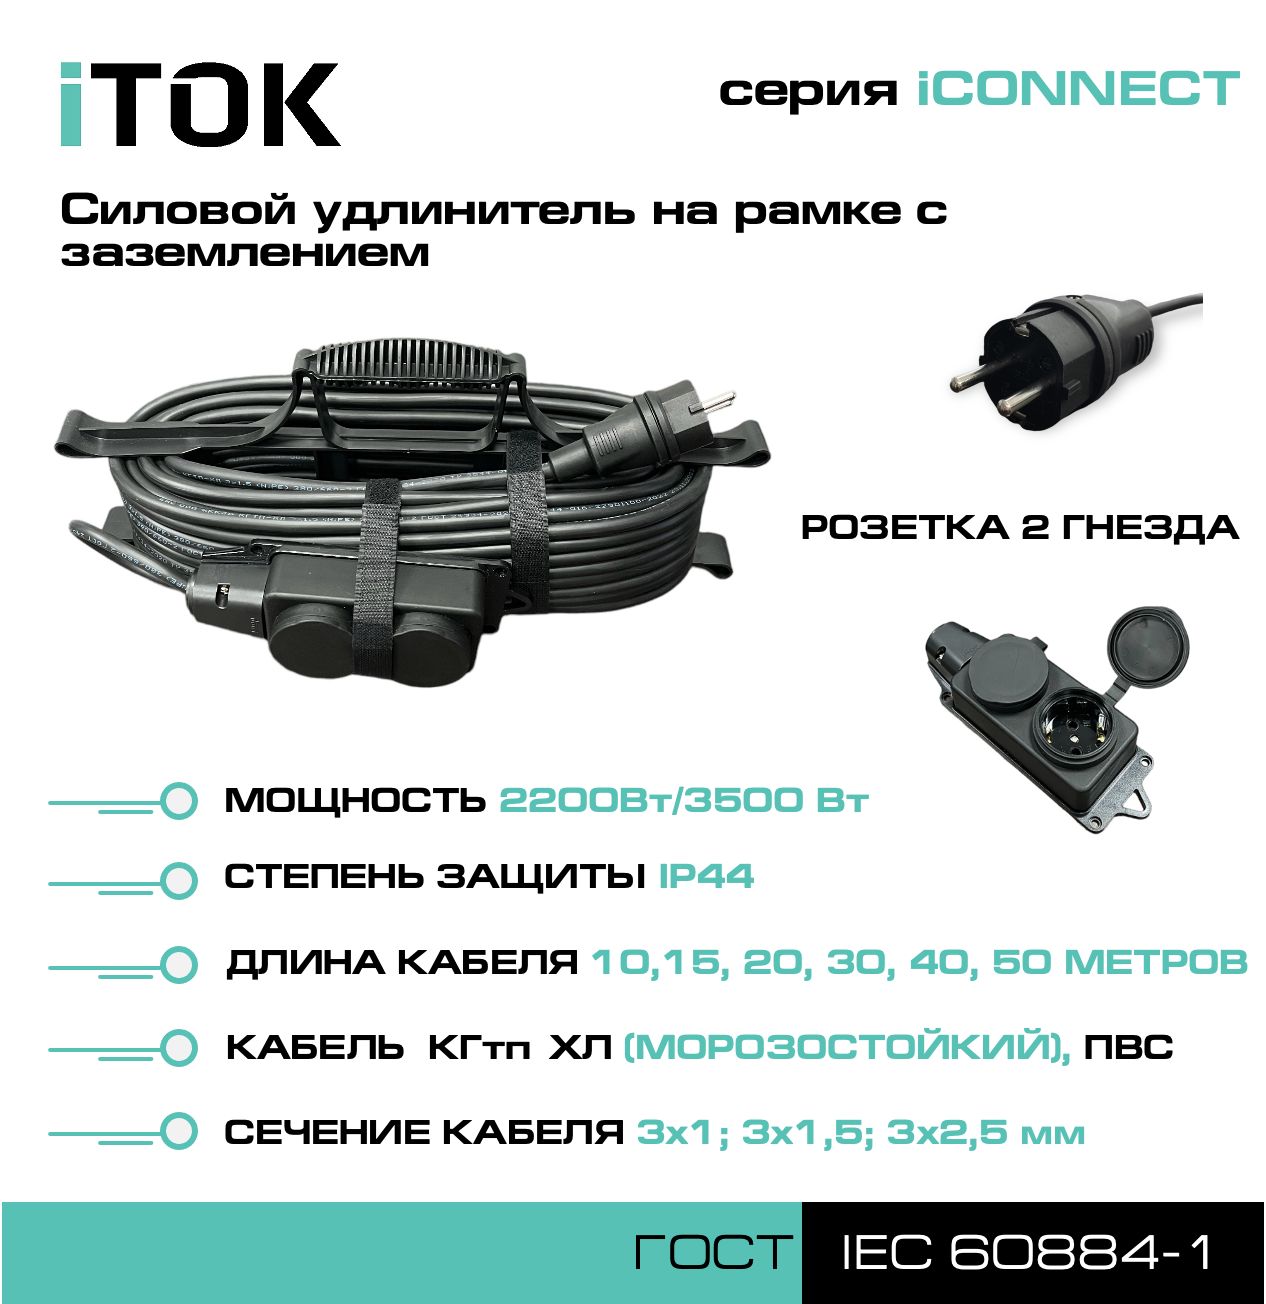 Удлинитель на рамке с заземлением серии iTOK iCONNECT ПВС 3х1,5 мм 2 гнезда IP44 30 м